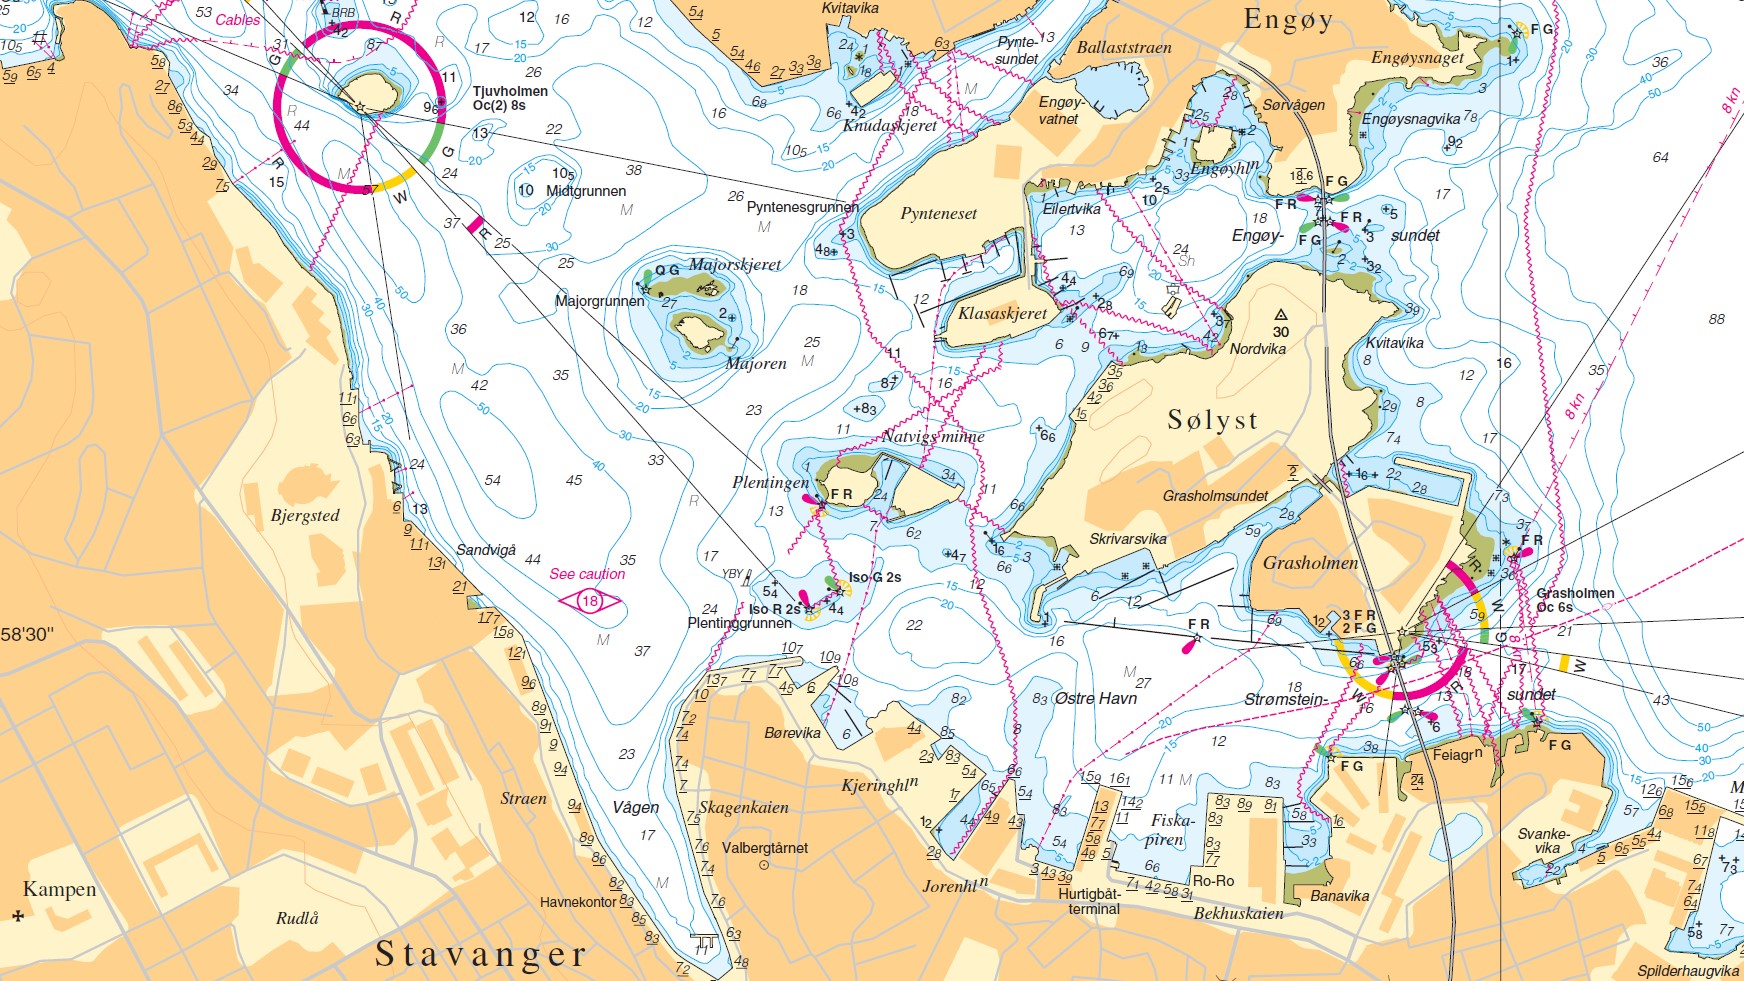 Detail for Stavanger Port on N 455